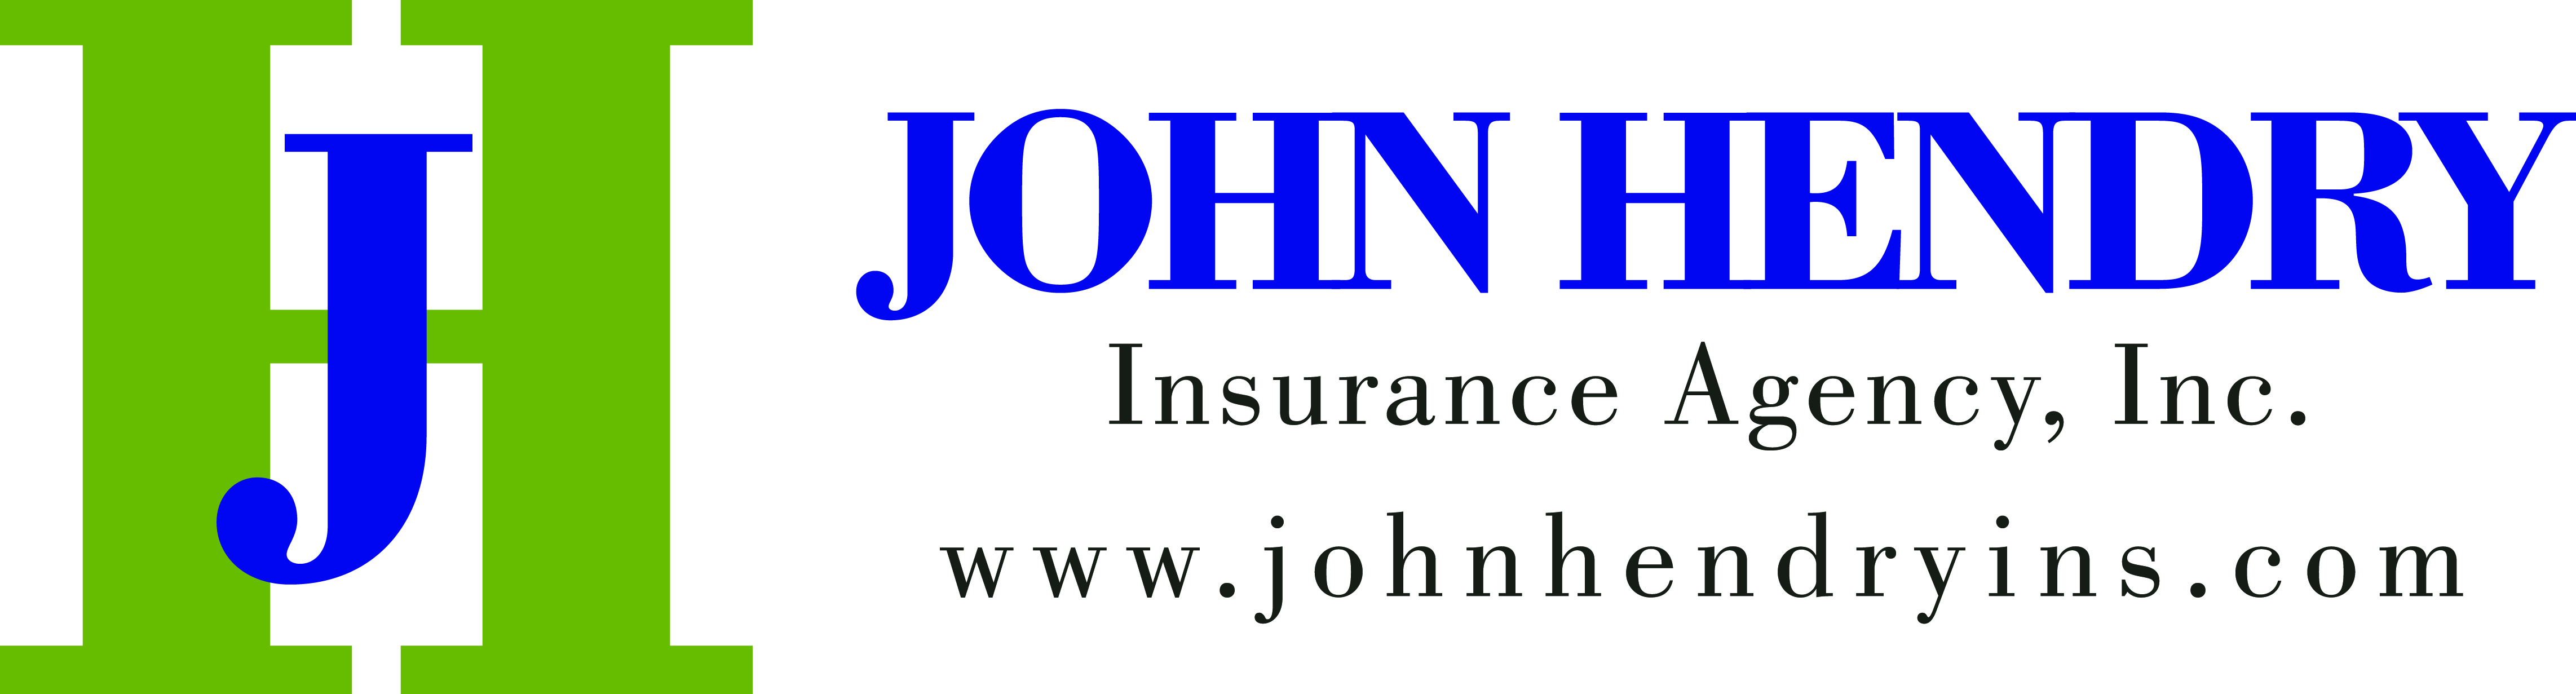 John Hendry Insurance Agency, Inc.'s logo